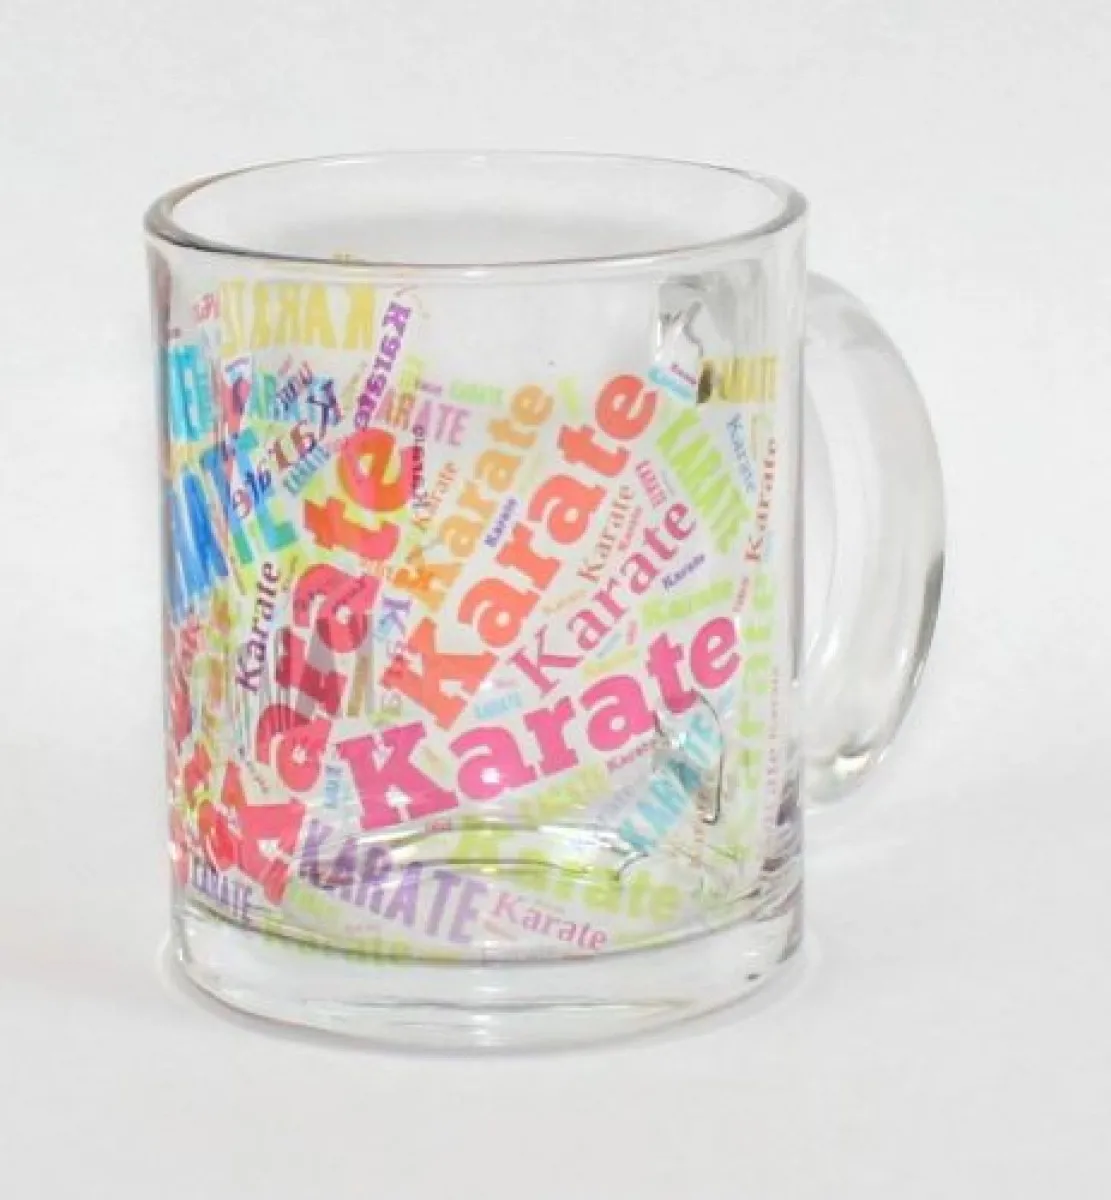 Glass mug with motif karate text